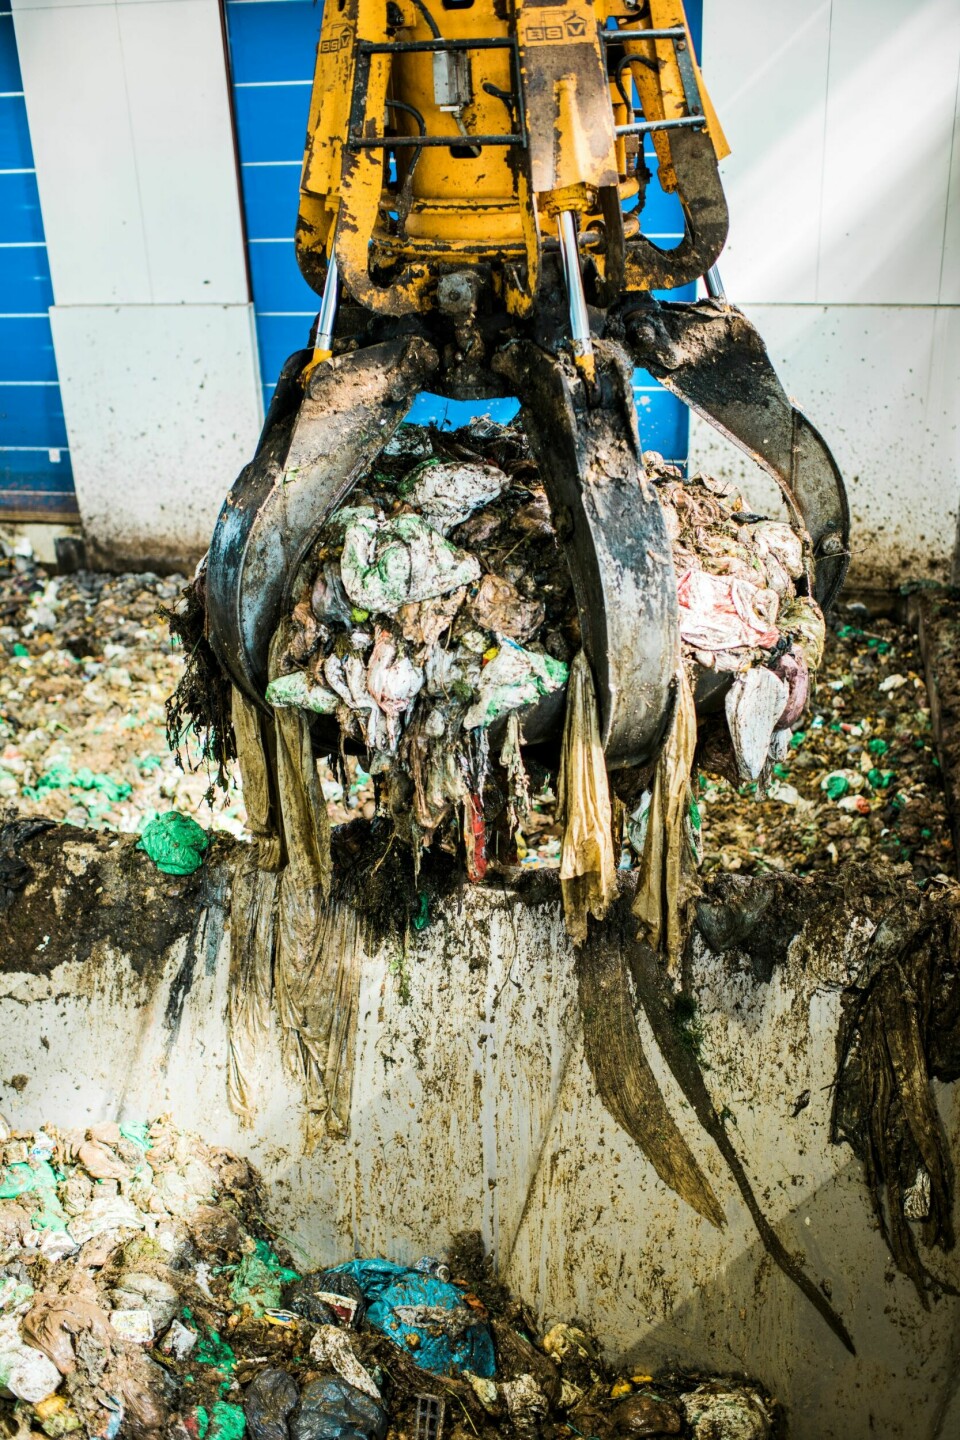 Matavfallet er gjerne pakket i plast når det kommer inn. Selv om mye sorteres ut, havner en god del plast i biogasstankene. Bionedbrytbar plast brytes ikke ned i prosessen der det lages biogass.